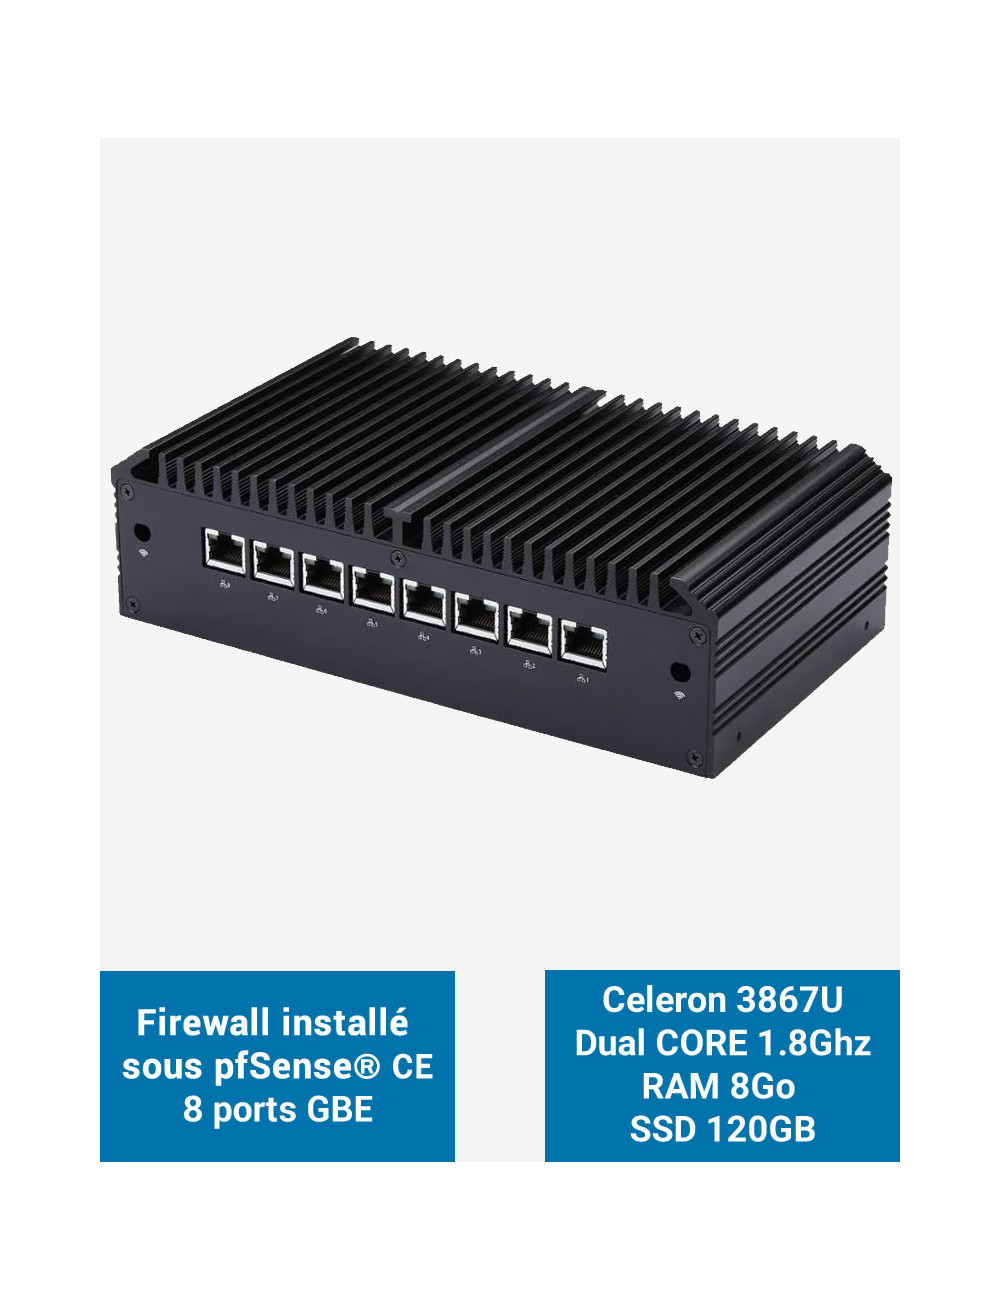 Firewall Q8x Celeron 3867U 8 ports GbE 8GB 120GB